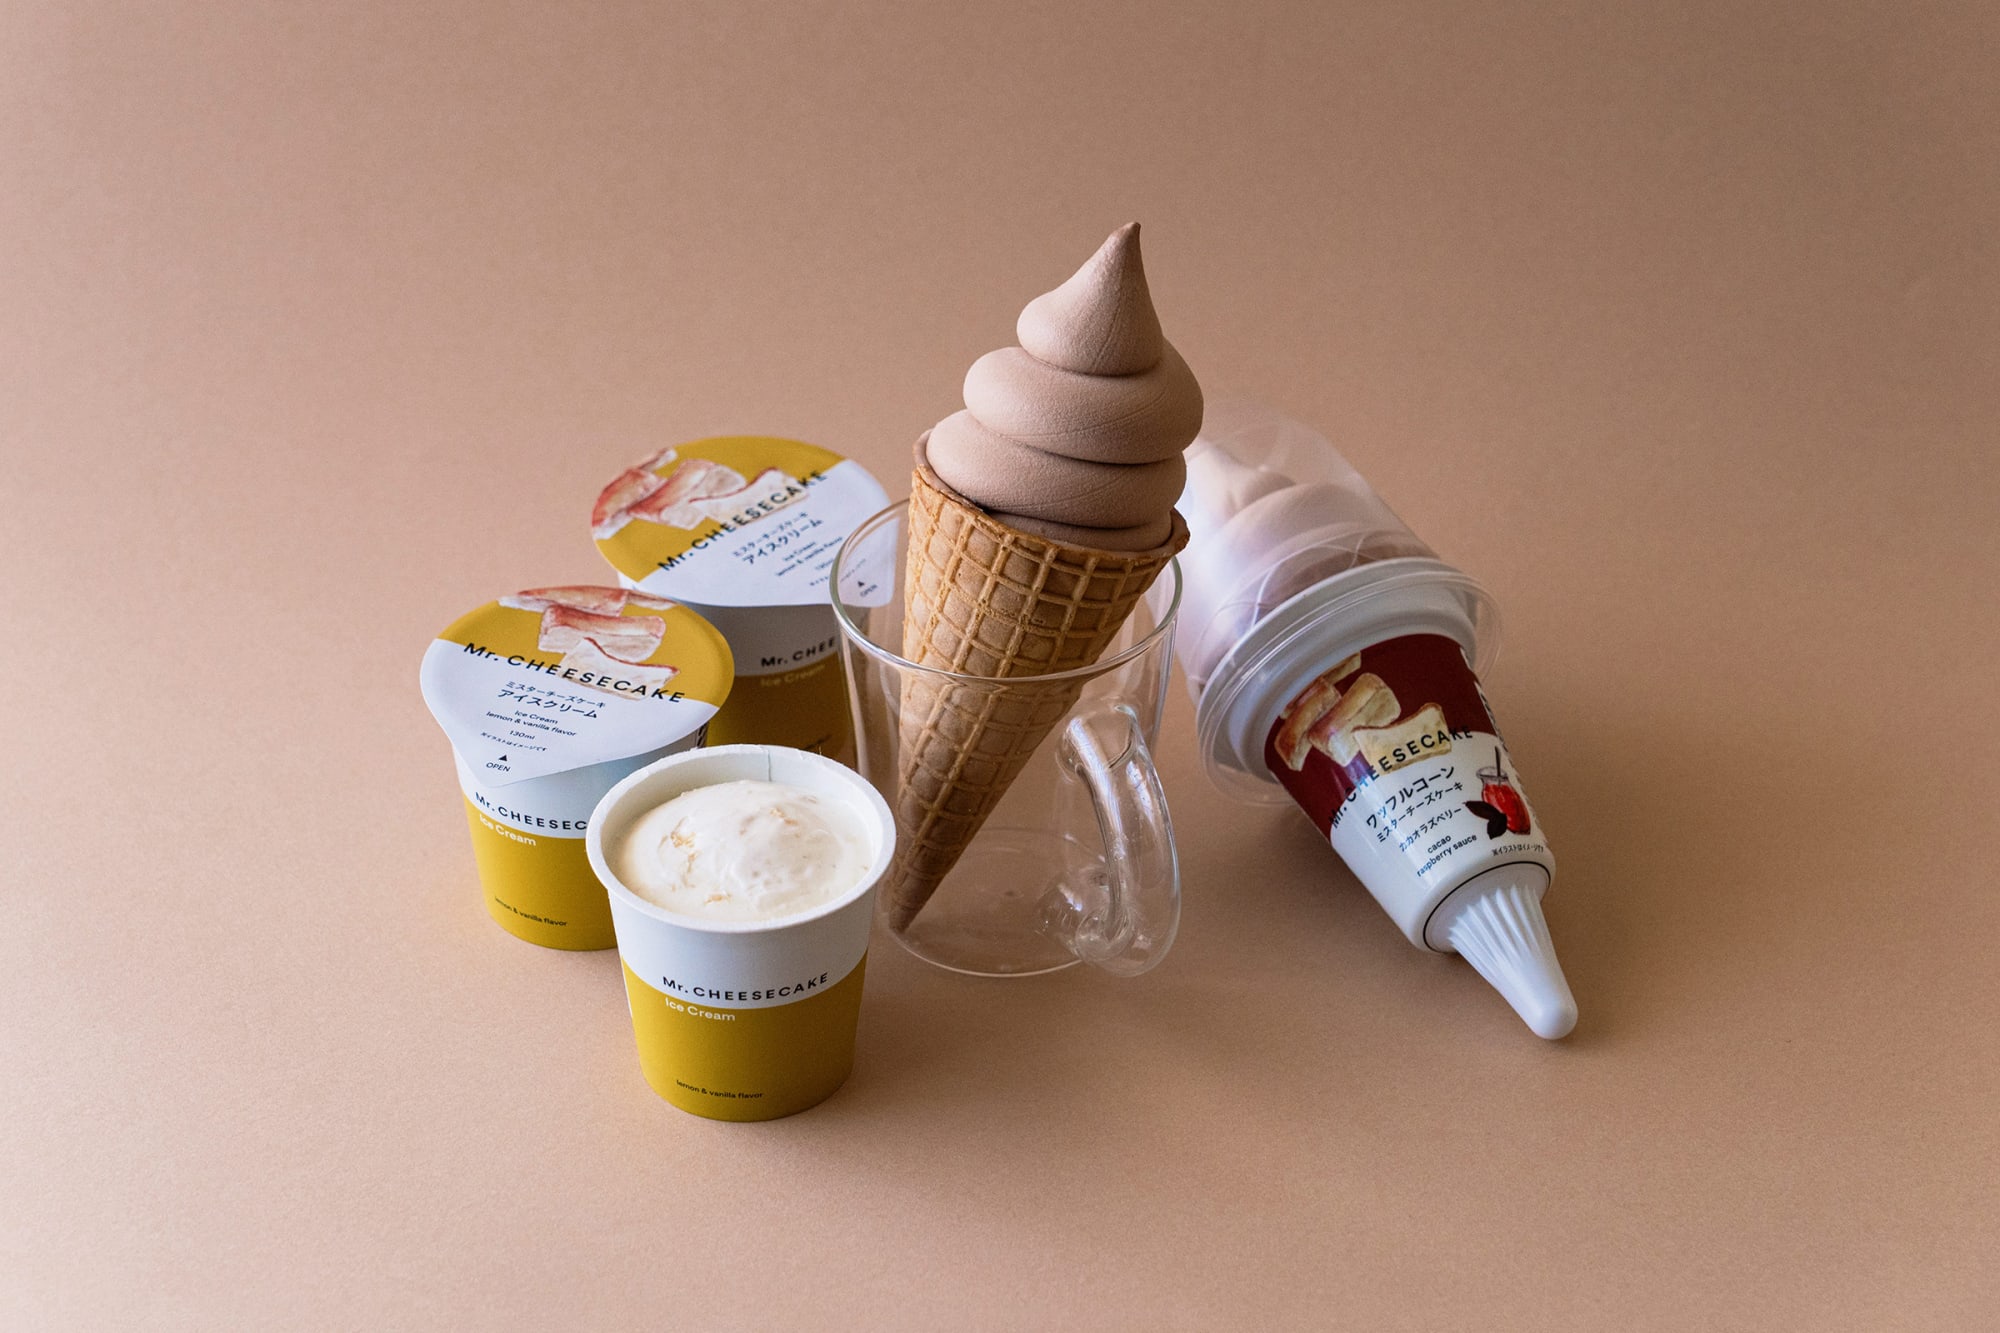 Mr Cheesecakeがセブン イレブンとコラボ アイスクリーム2種を発売